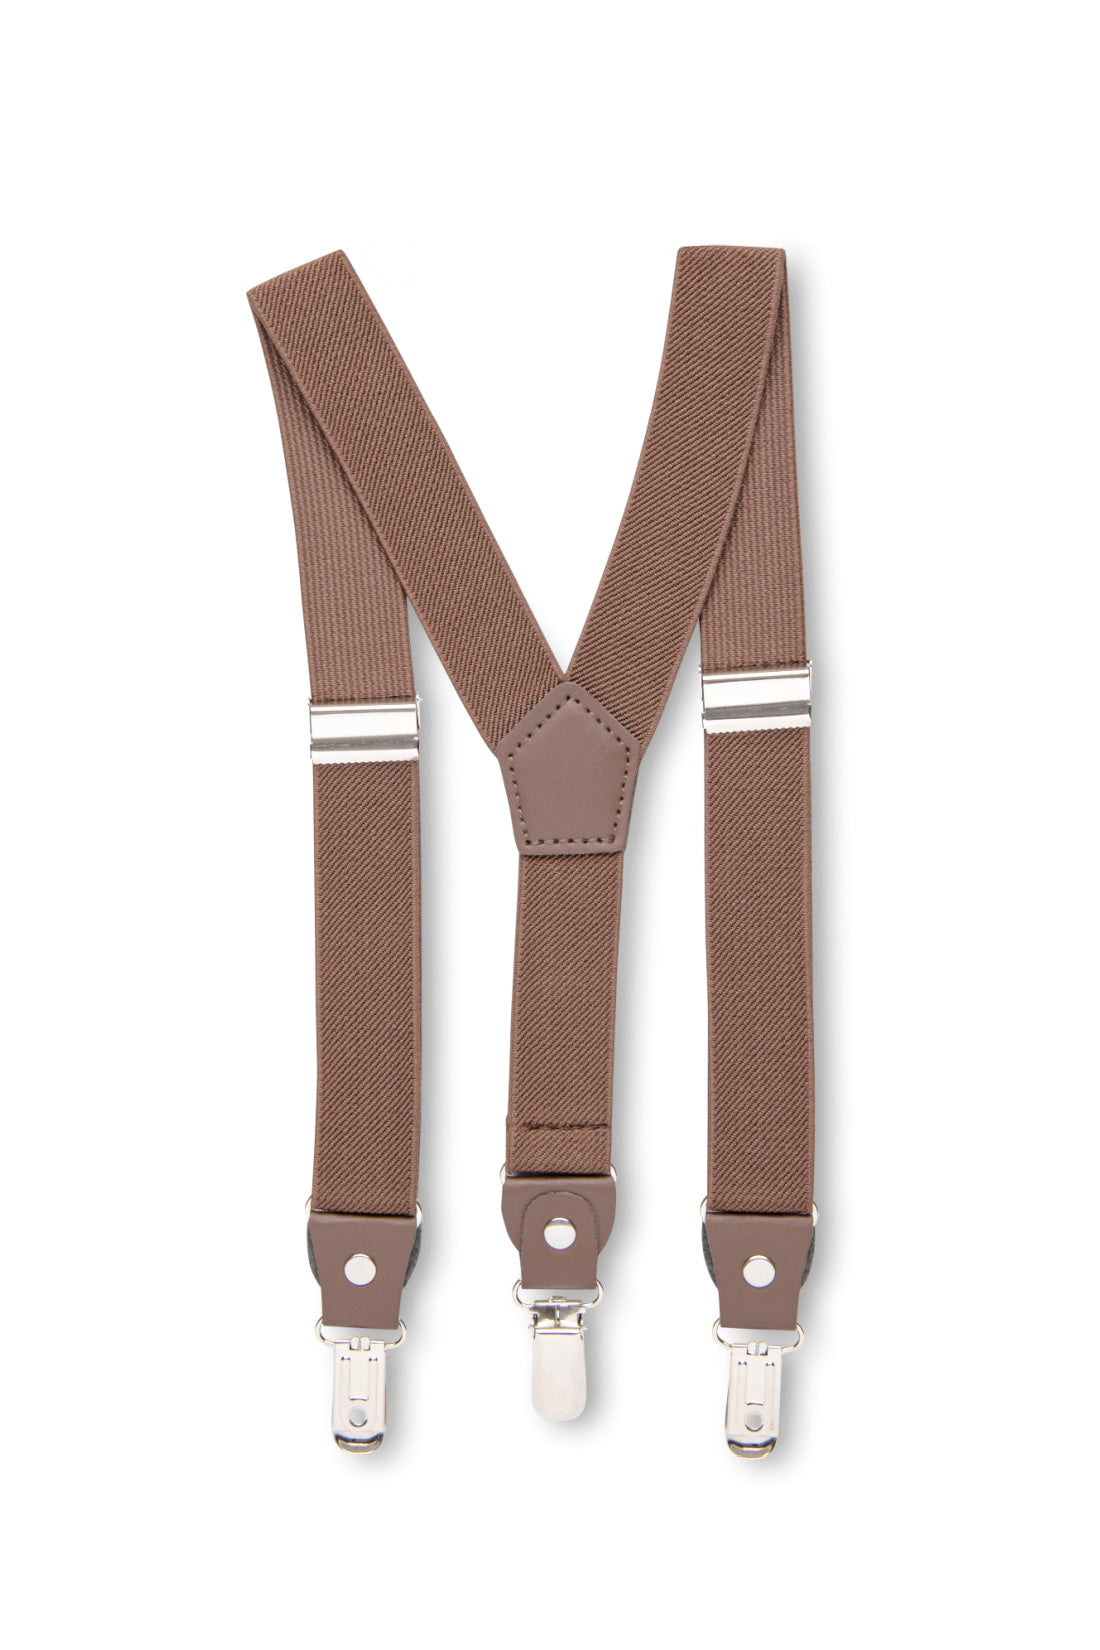 Medium Brown Suspenders